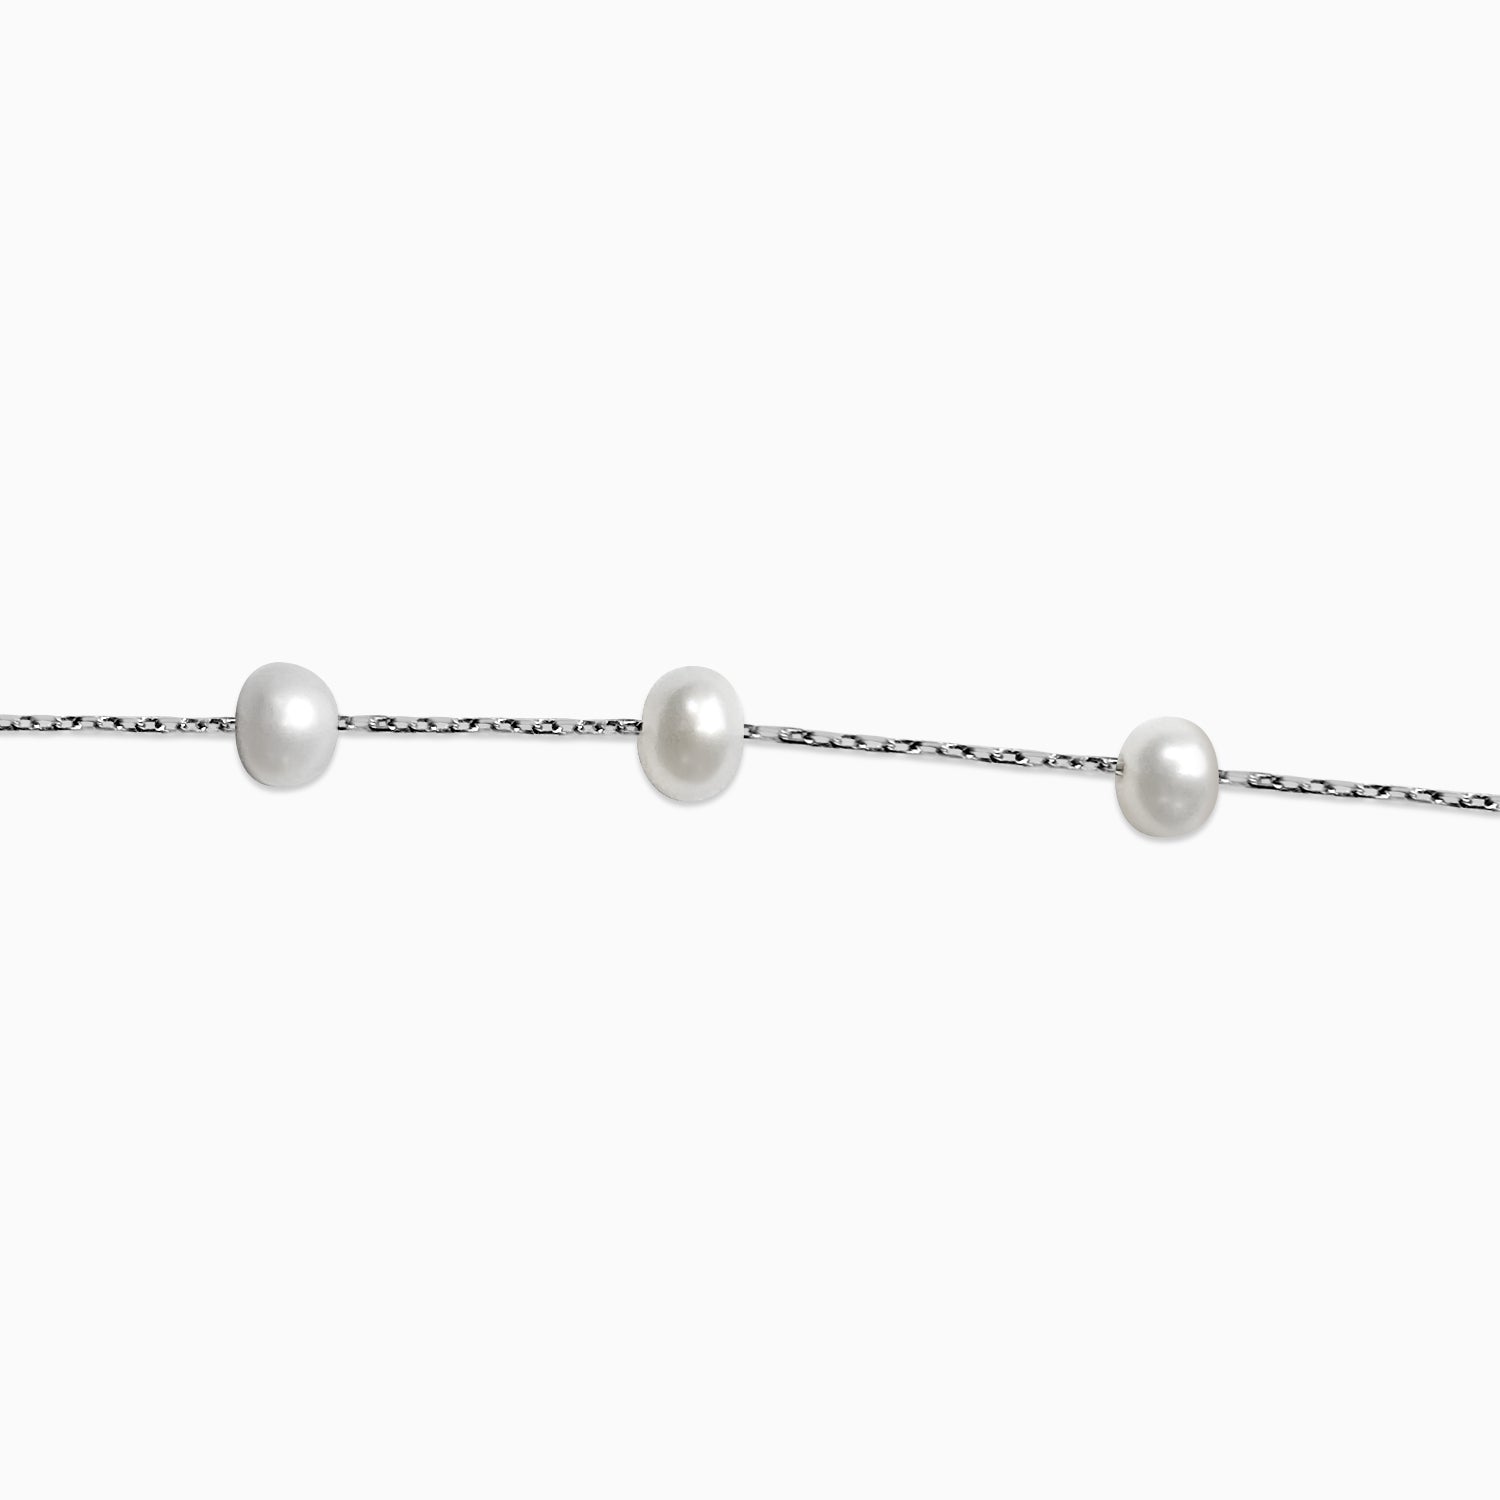 Silver One Line Pearl Bracelet